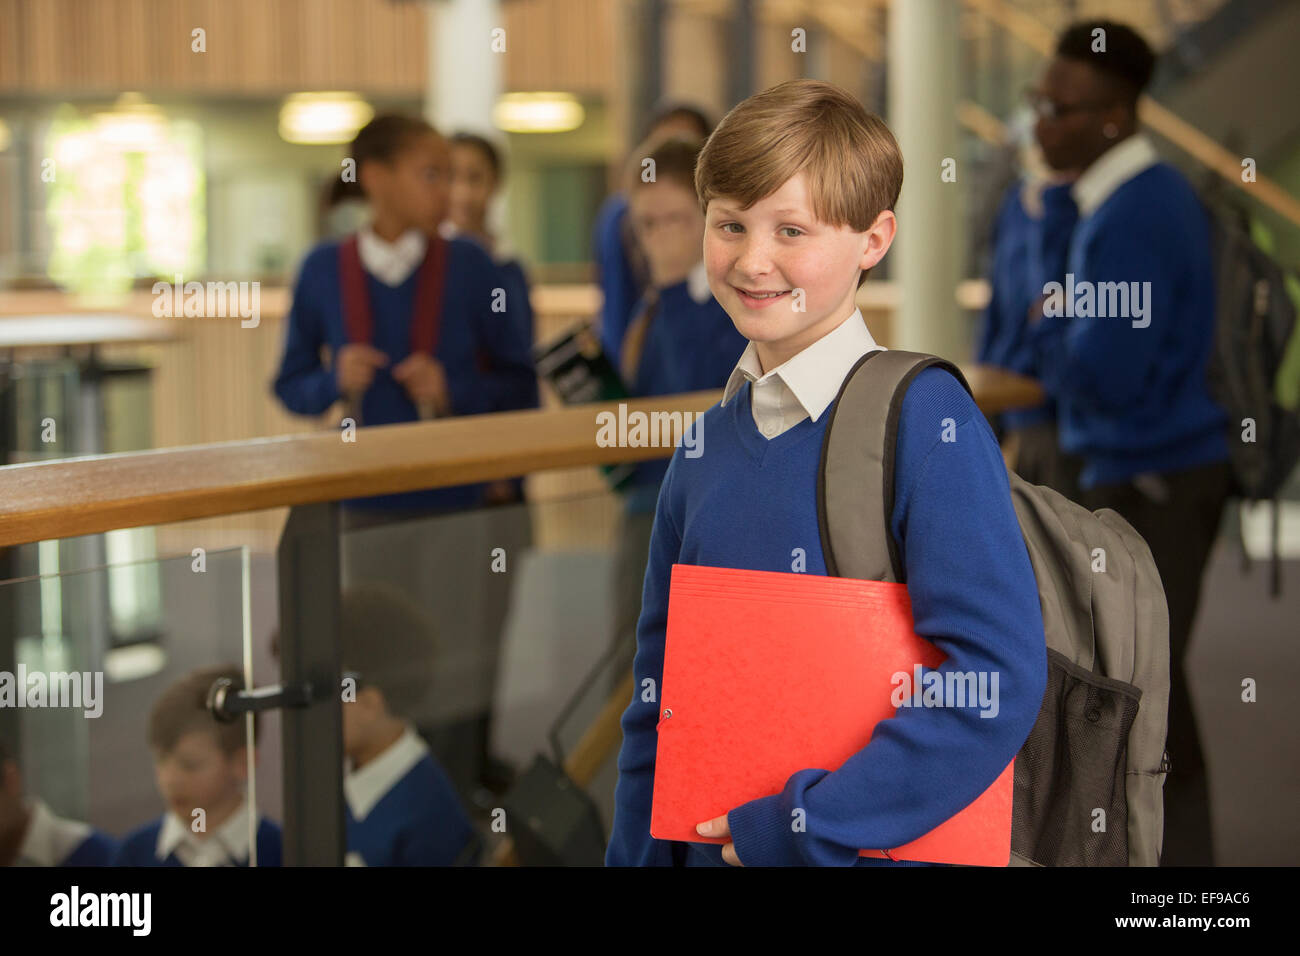 Portrait of elementary school boy wearing blue school uniform standing in school corridor Banque D'Images